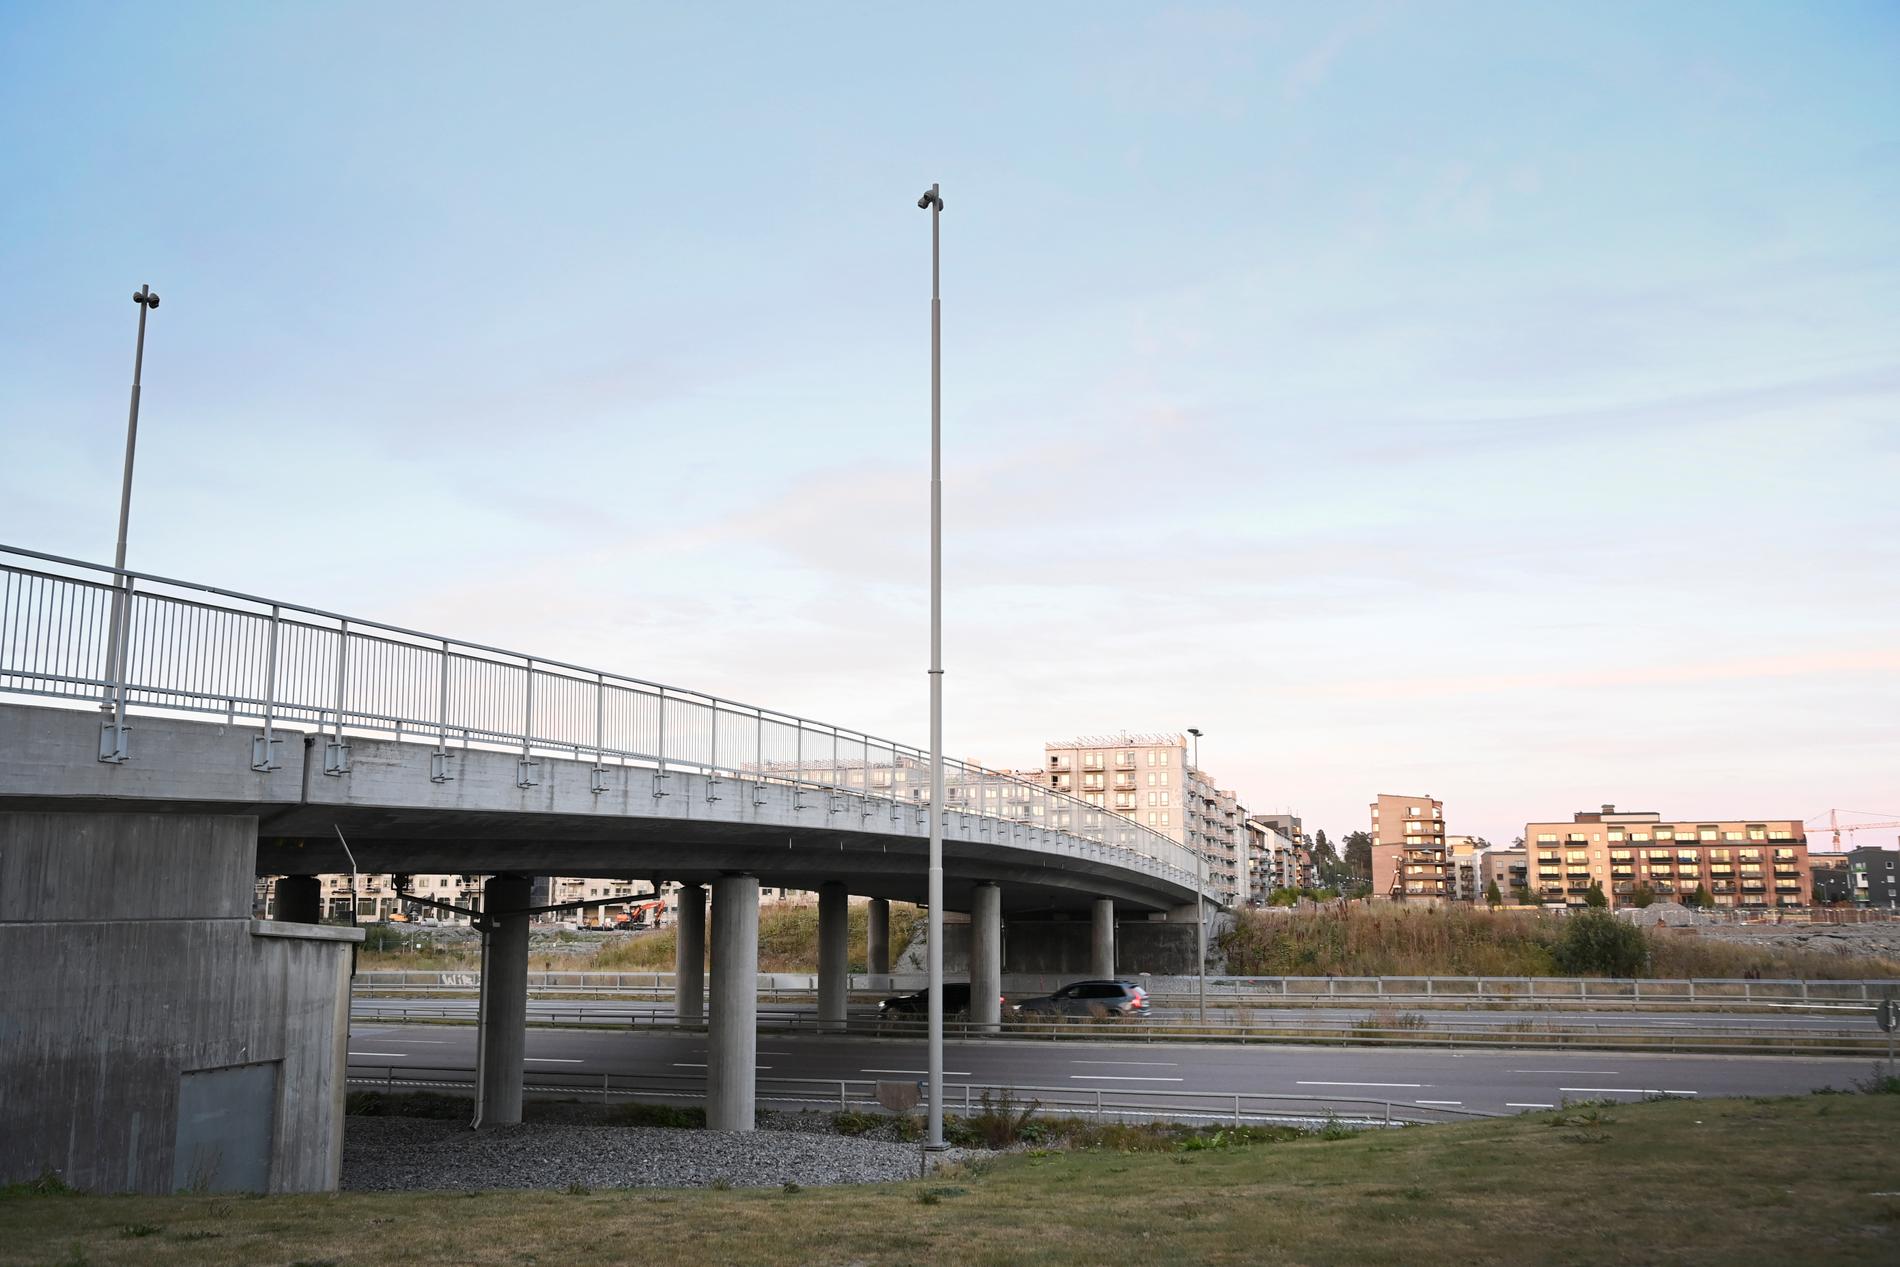 ”Riv bron till Rinkeby”, basuneras ut i kampanjen som ska rulla i lokaltidningen Mitt i Sundbyberg. 